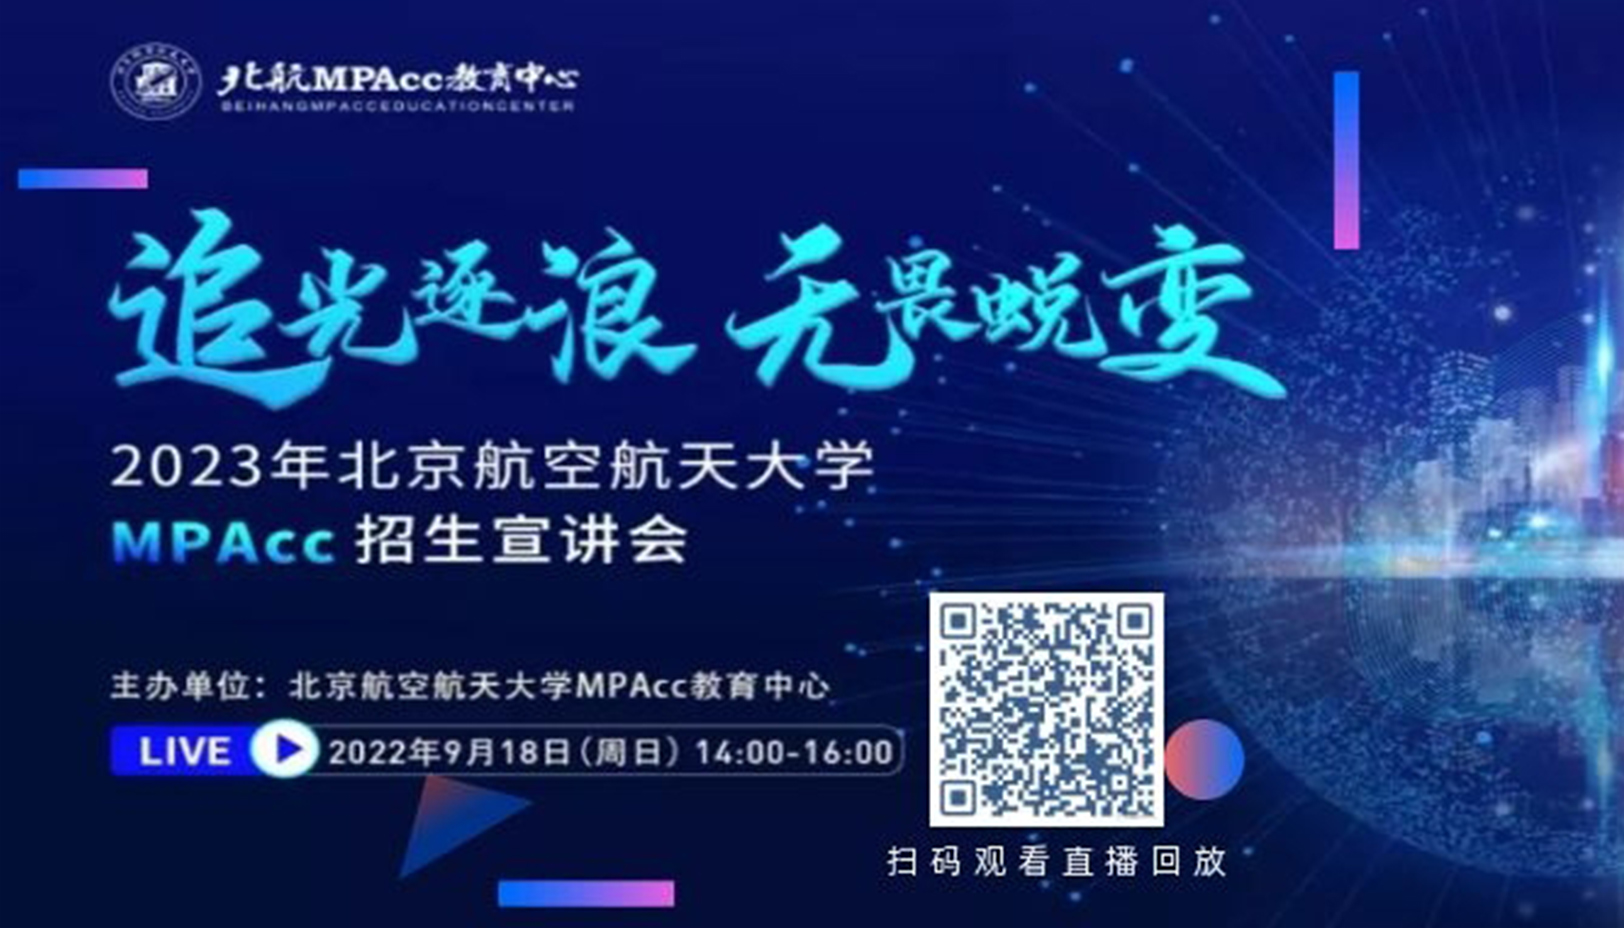 追光逐浪 无畏蜕变——2023年北京航空航天大学MPAcc招生宣讲会精彩回顾